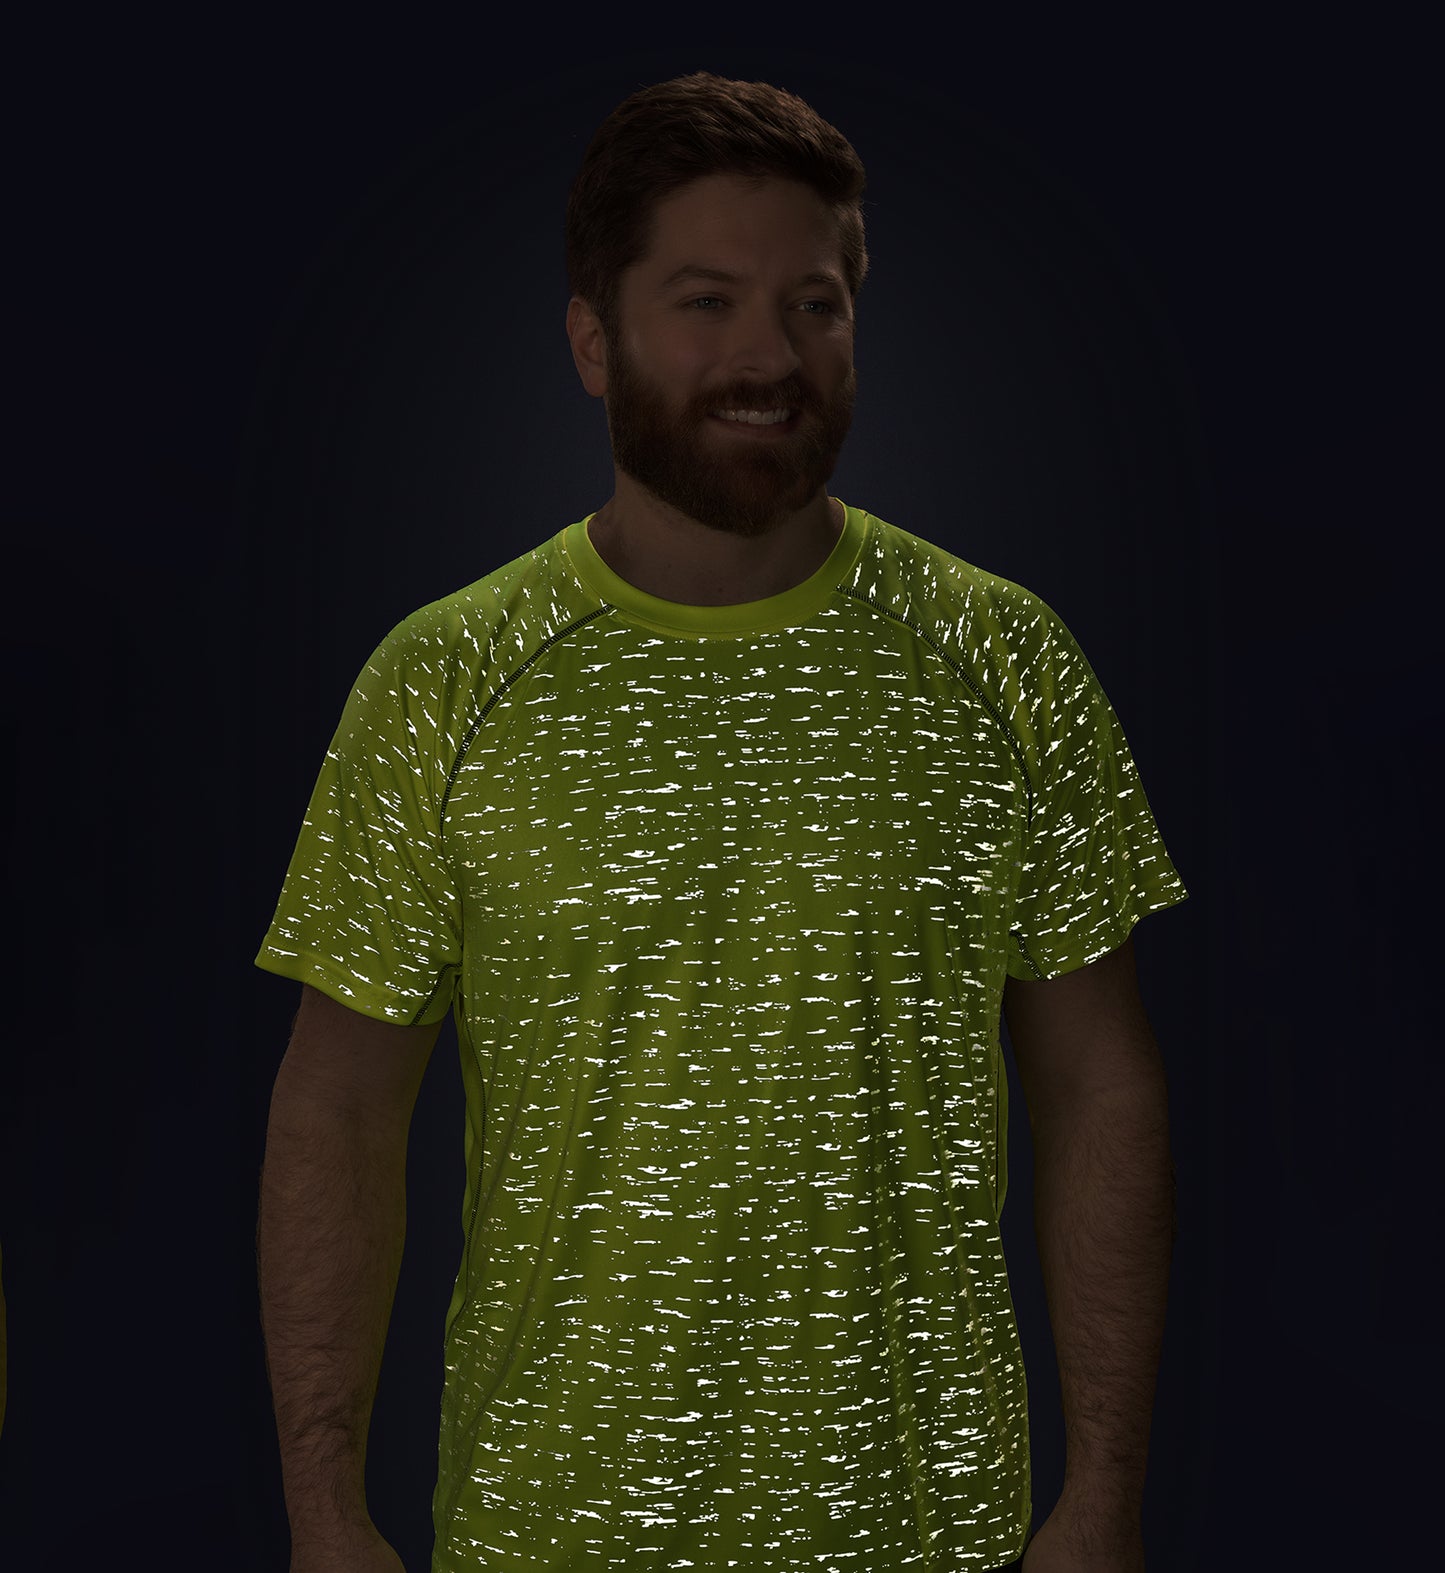 Men’s Lime Short Sleeve WildSpark™ Athletic Shirt